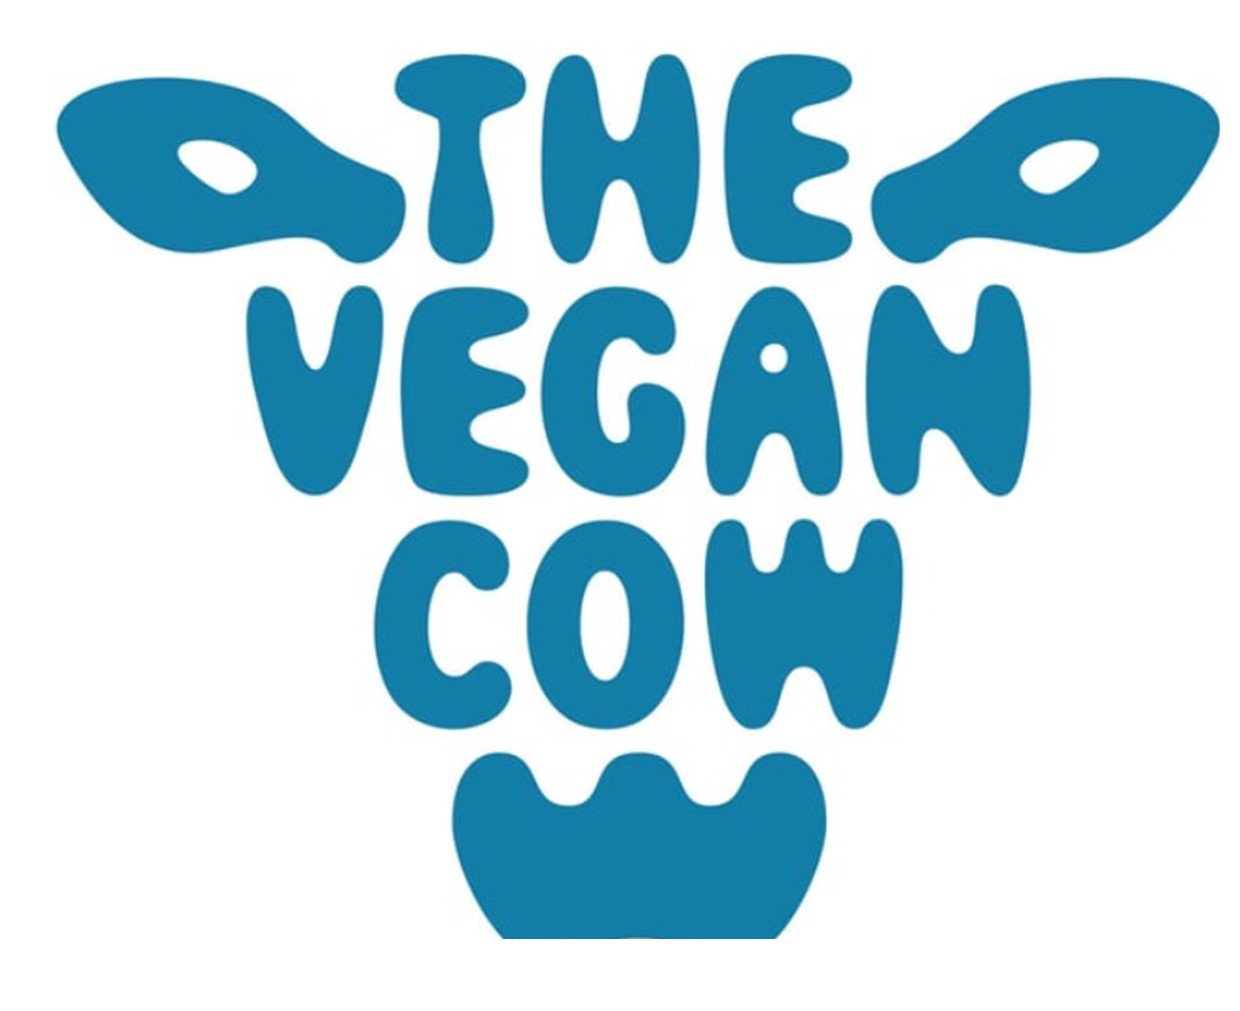 The vegan Cow